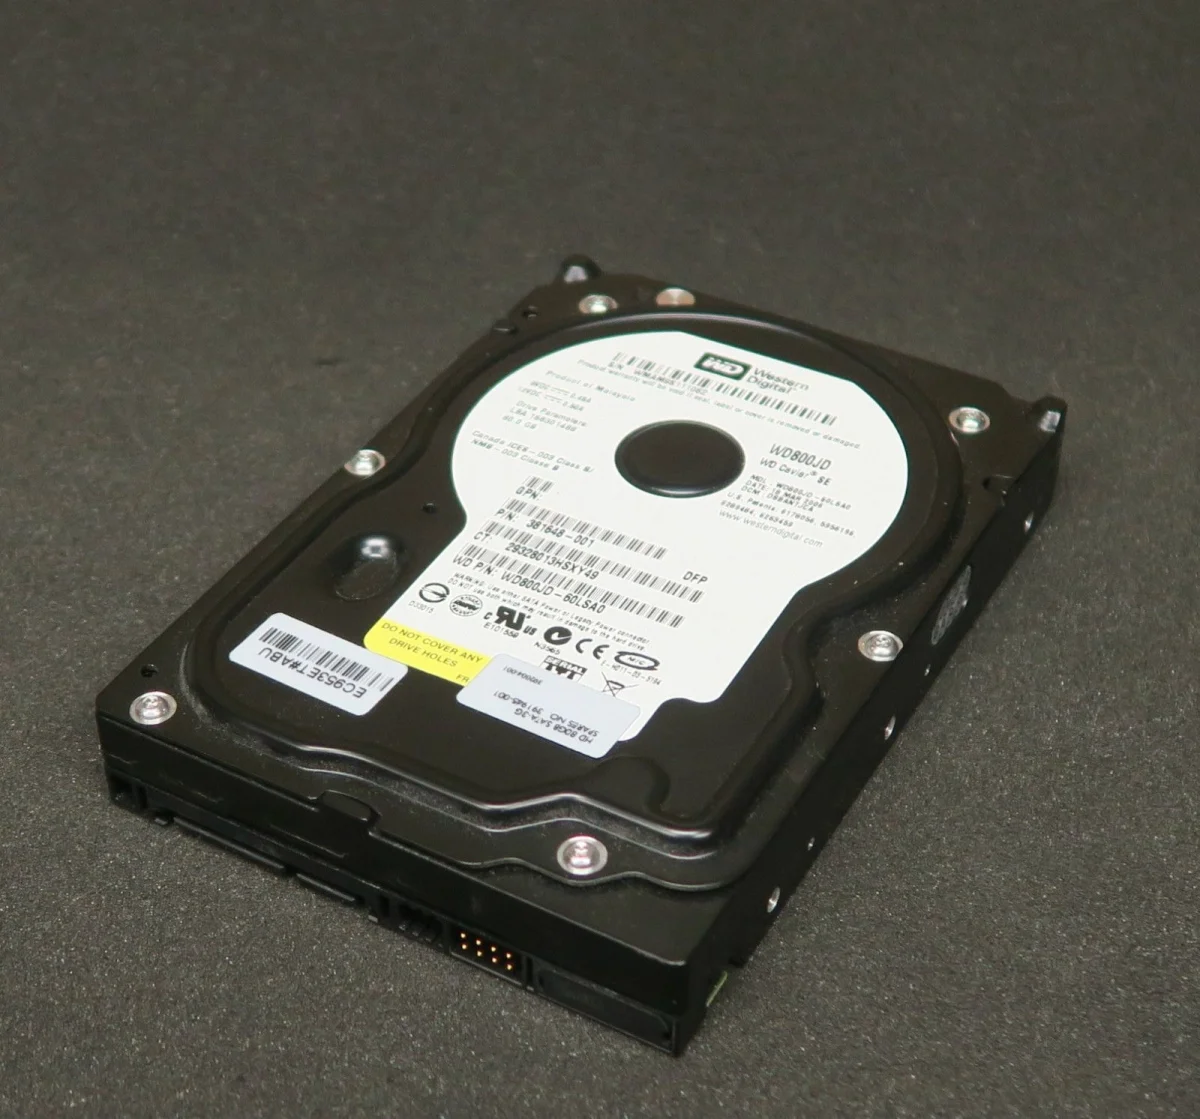 Western Digital прекратит выпуск жёстких дисков из-за снижения спроса - фото 1